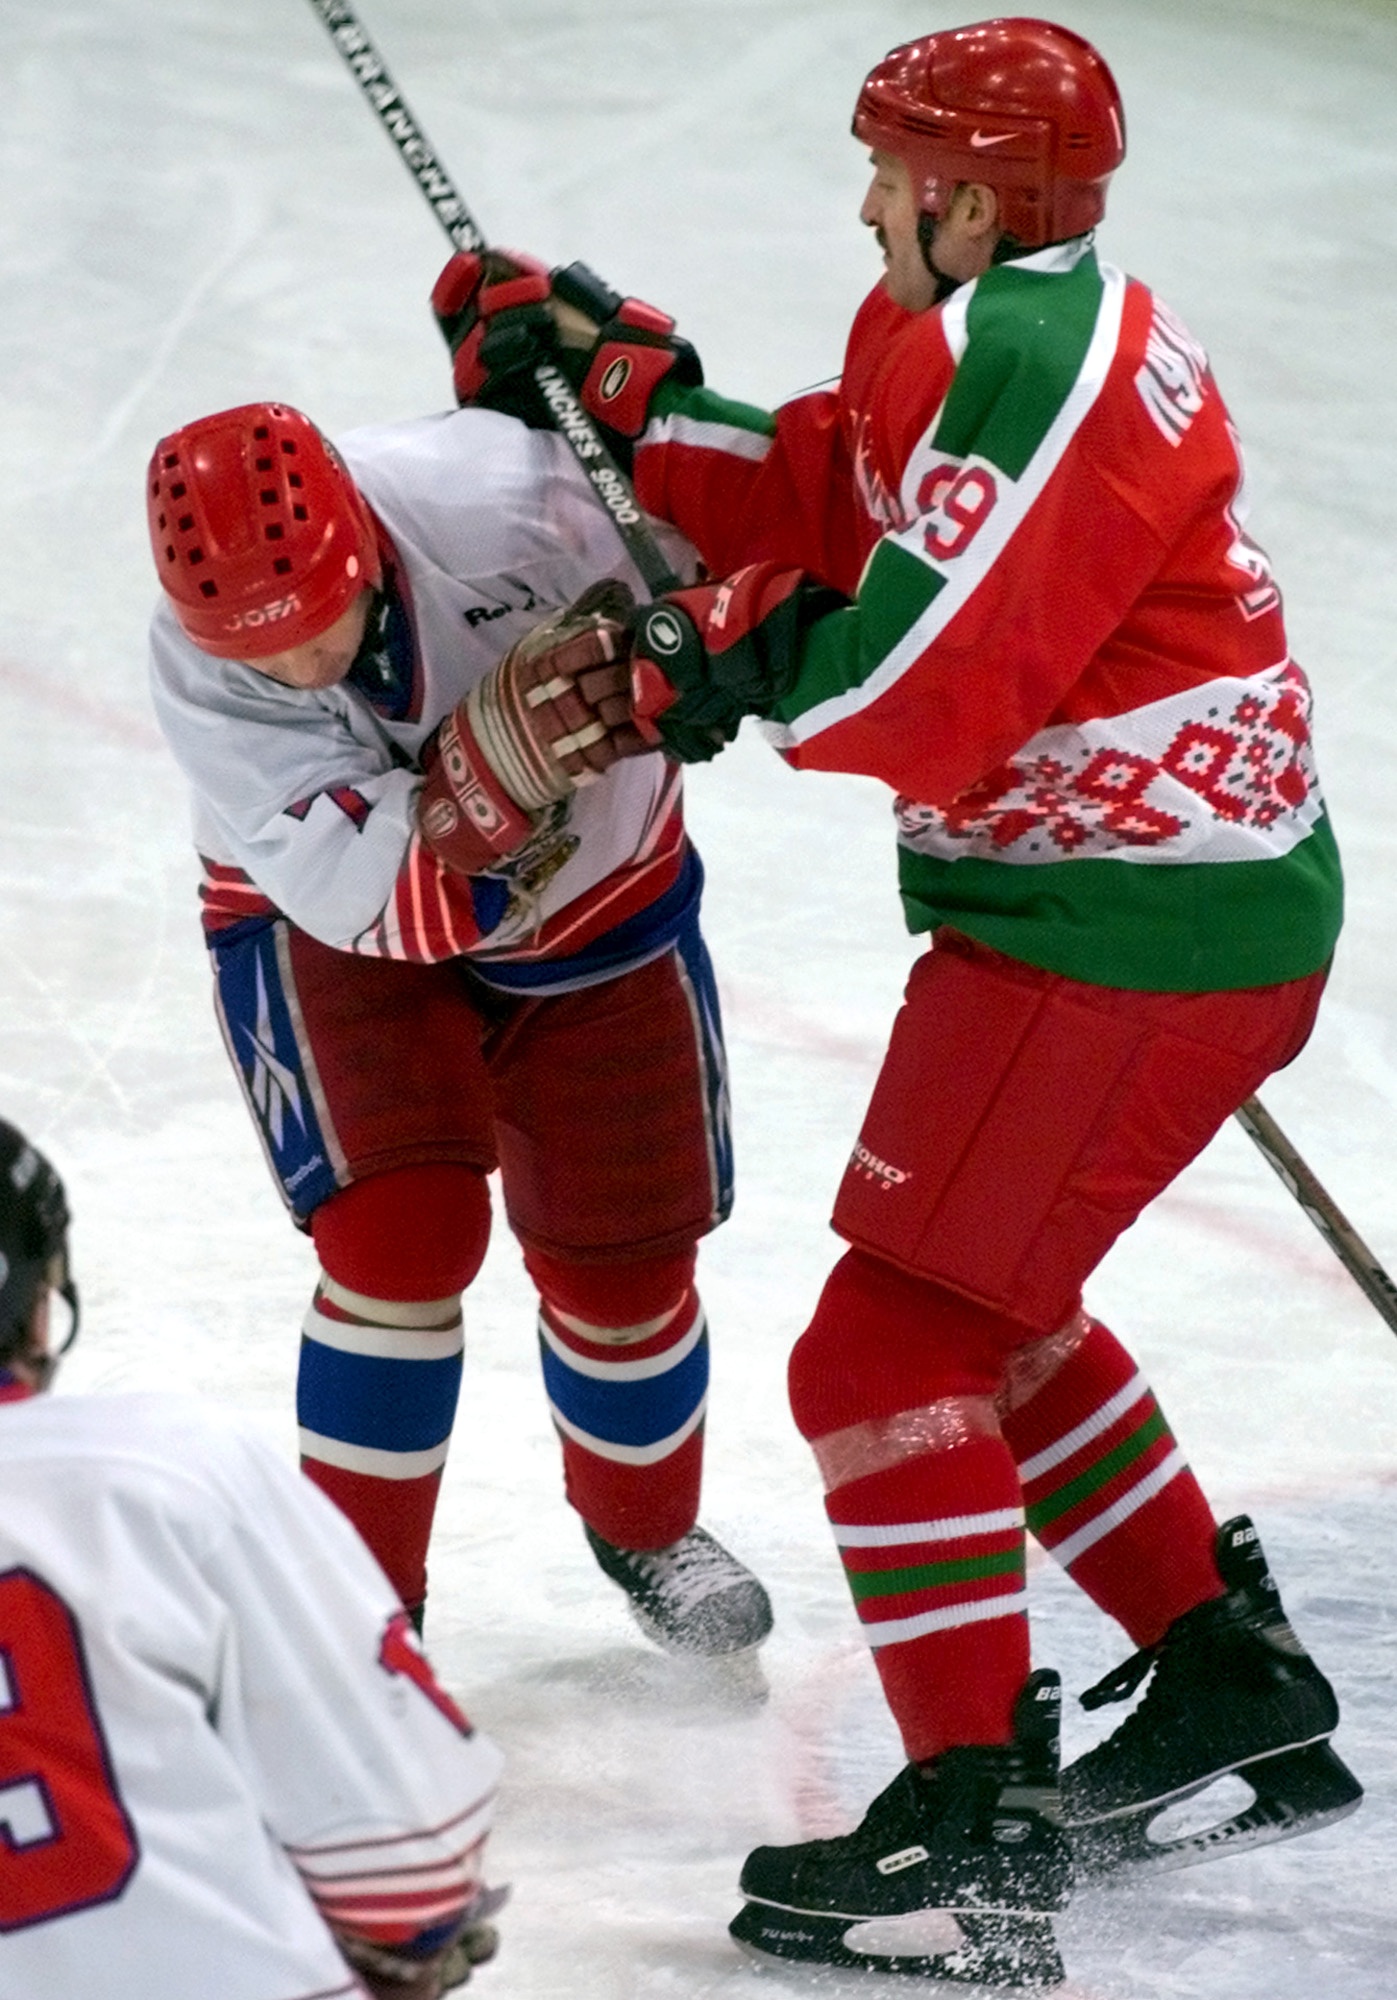 Lukasjenko spelar ishockey själv också, här i kamp med ryske Alexander Sopelkin i en match mellan landets regeringar.